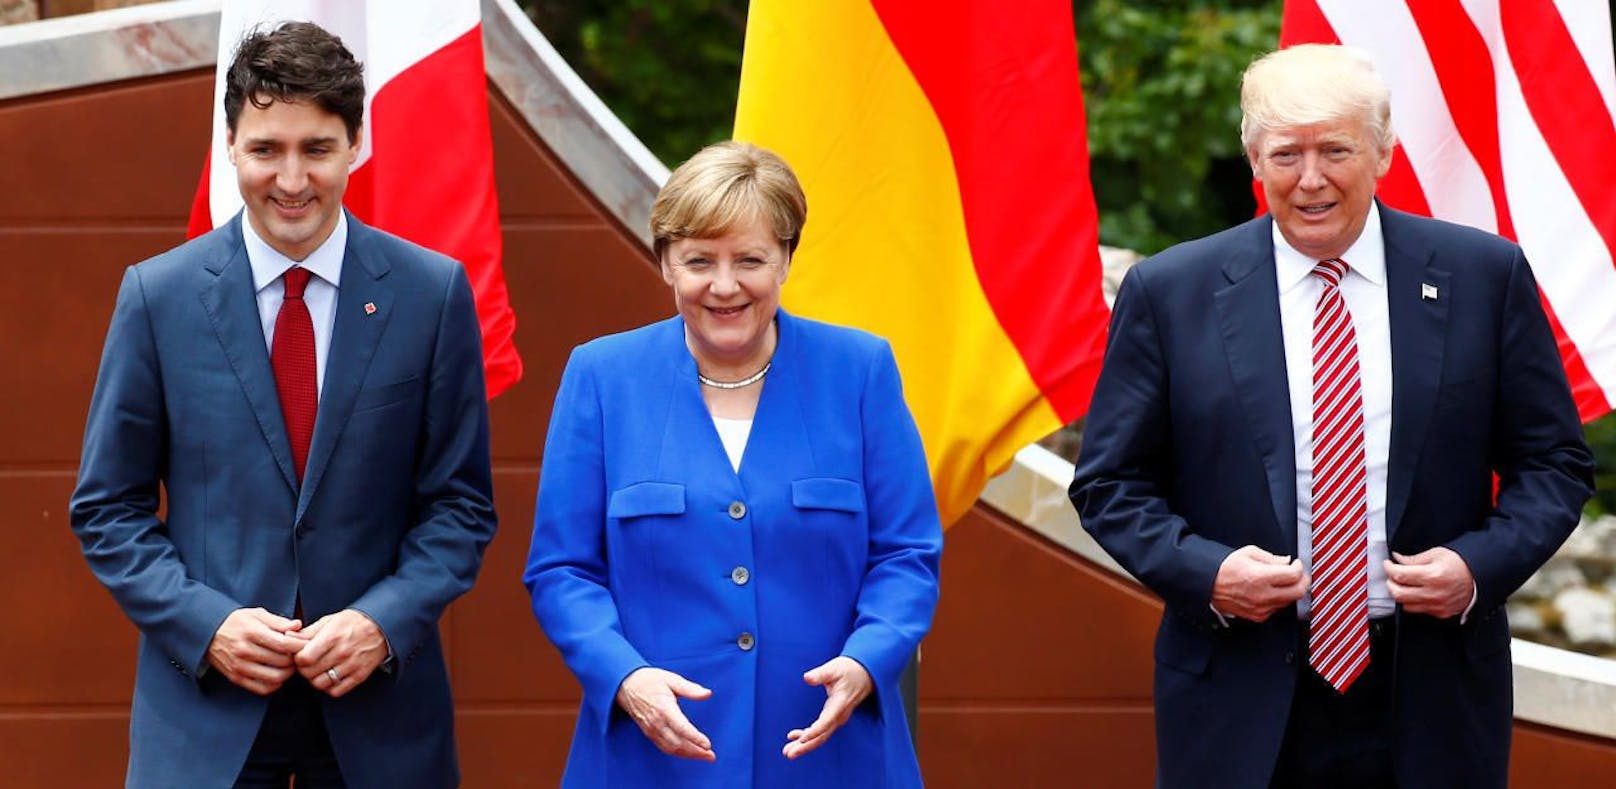 Worum gehts beim G20-Gipfel und wer zahlt das alles?